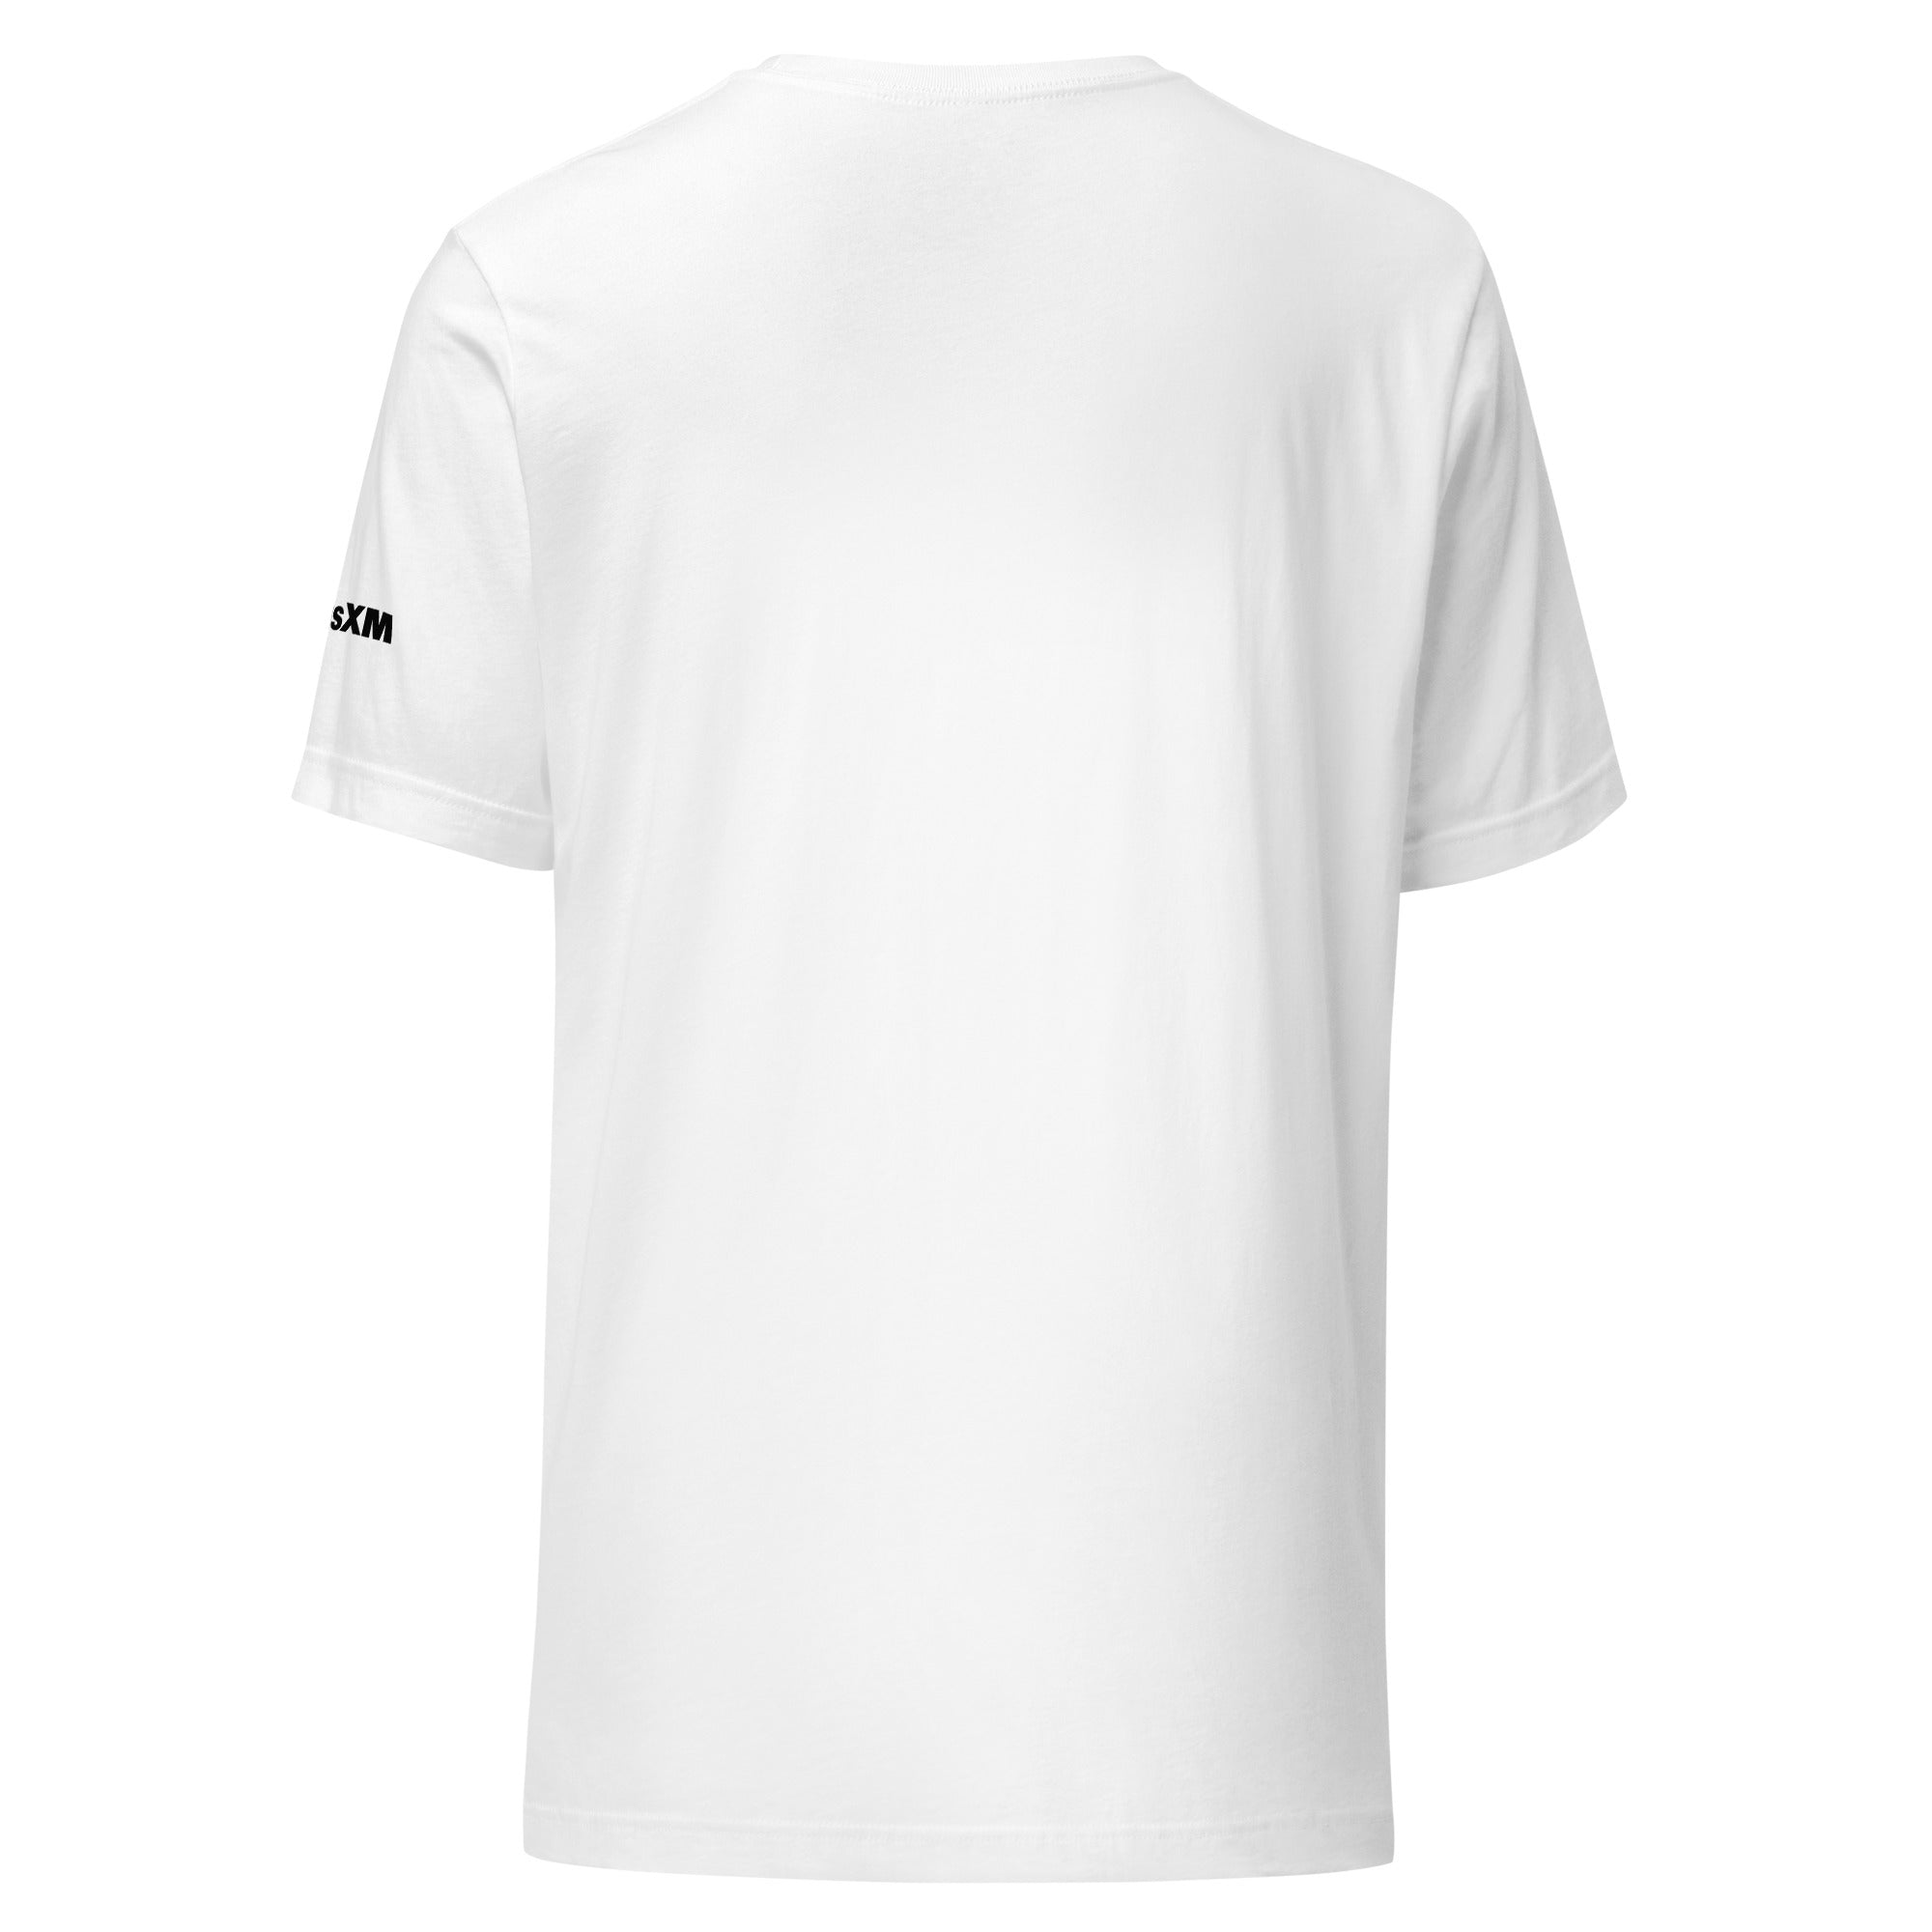 Caliente: T-shirt (White)